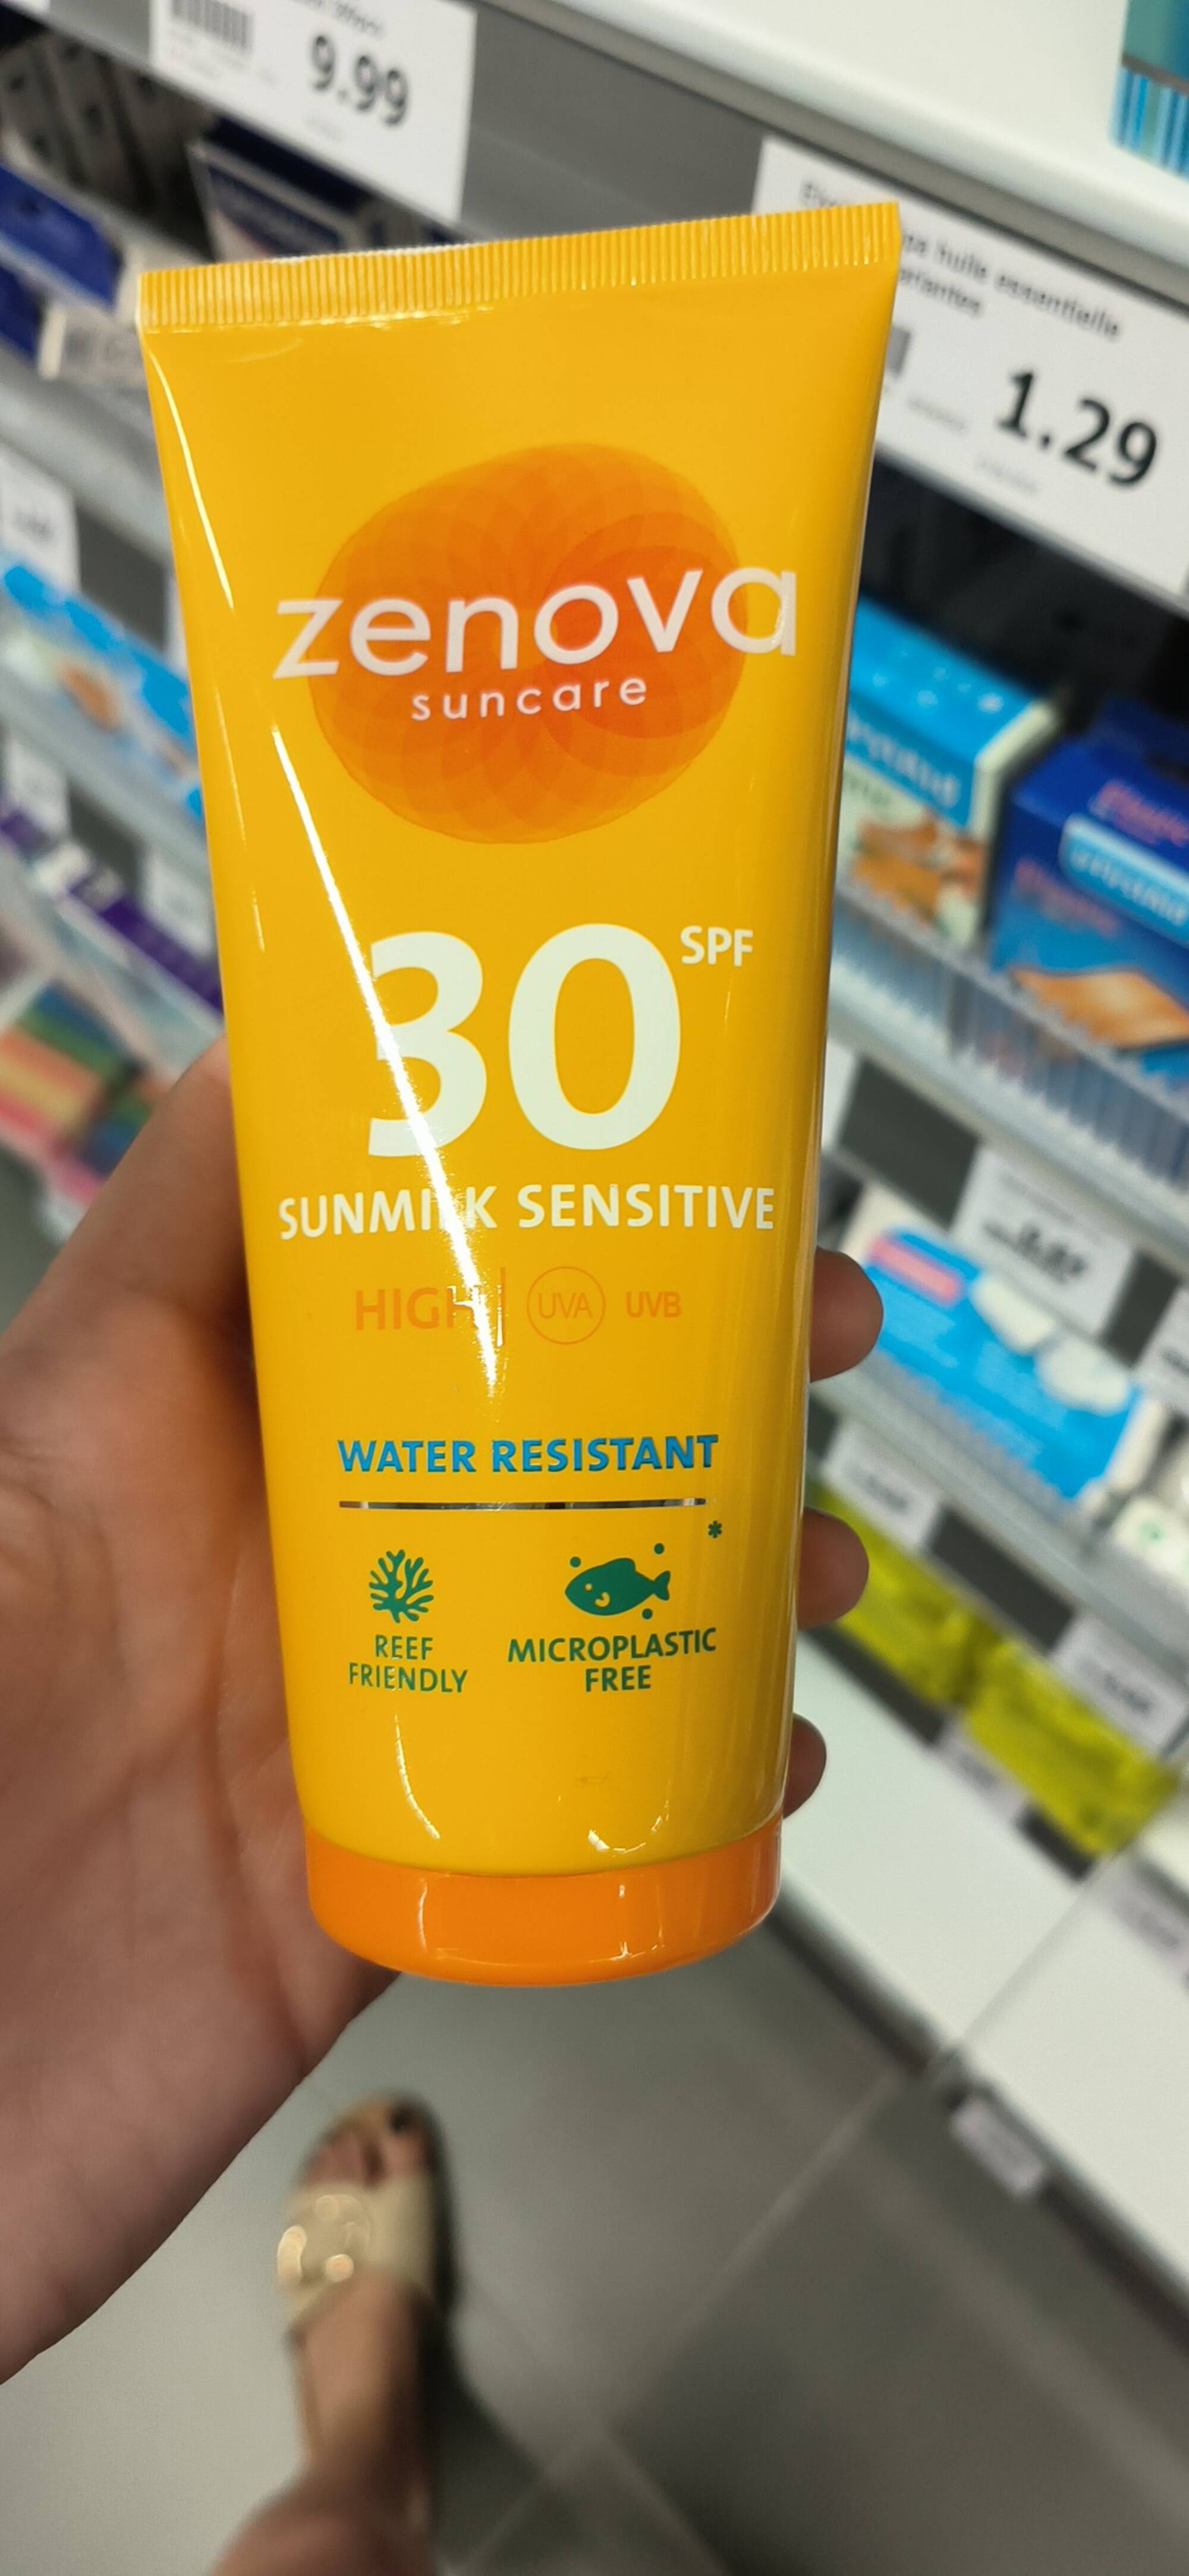 ZENOVA - Suncare - Sunmilk sensitive SPF 30 water resistant